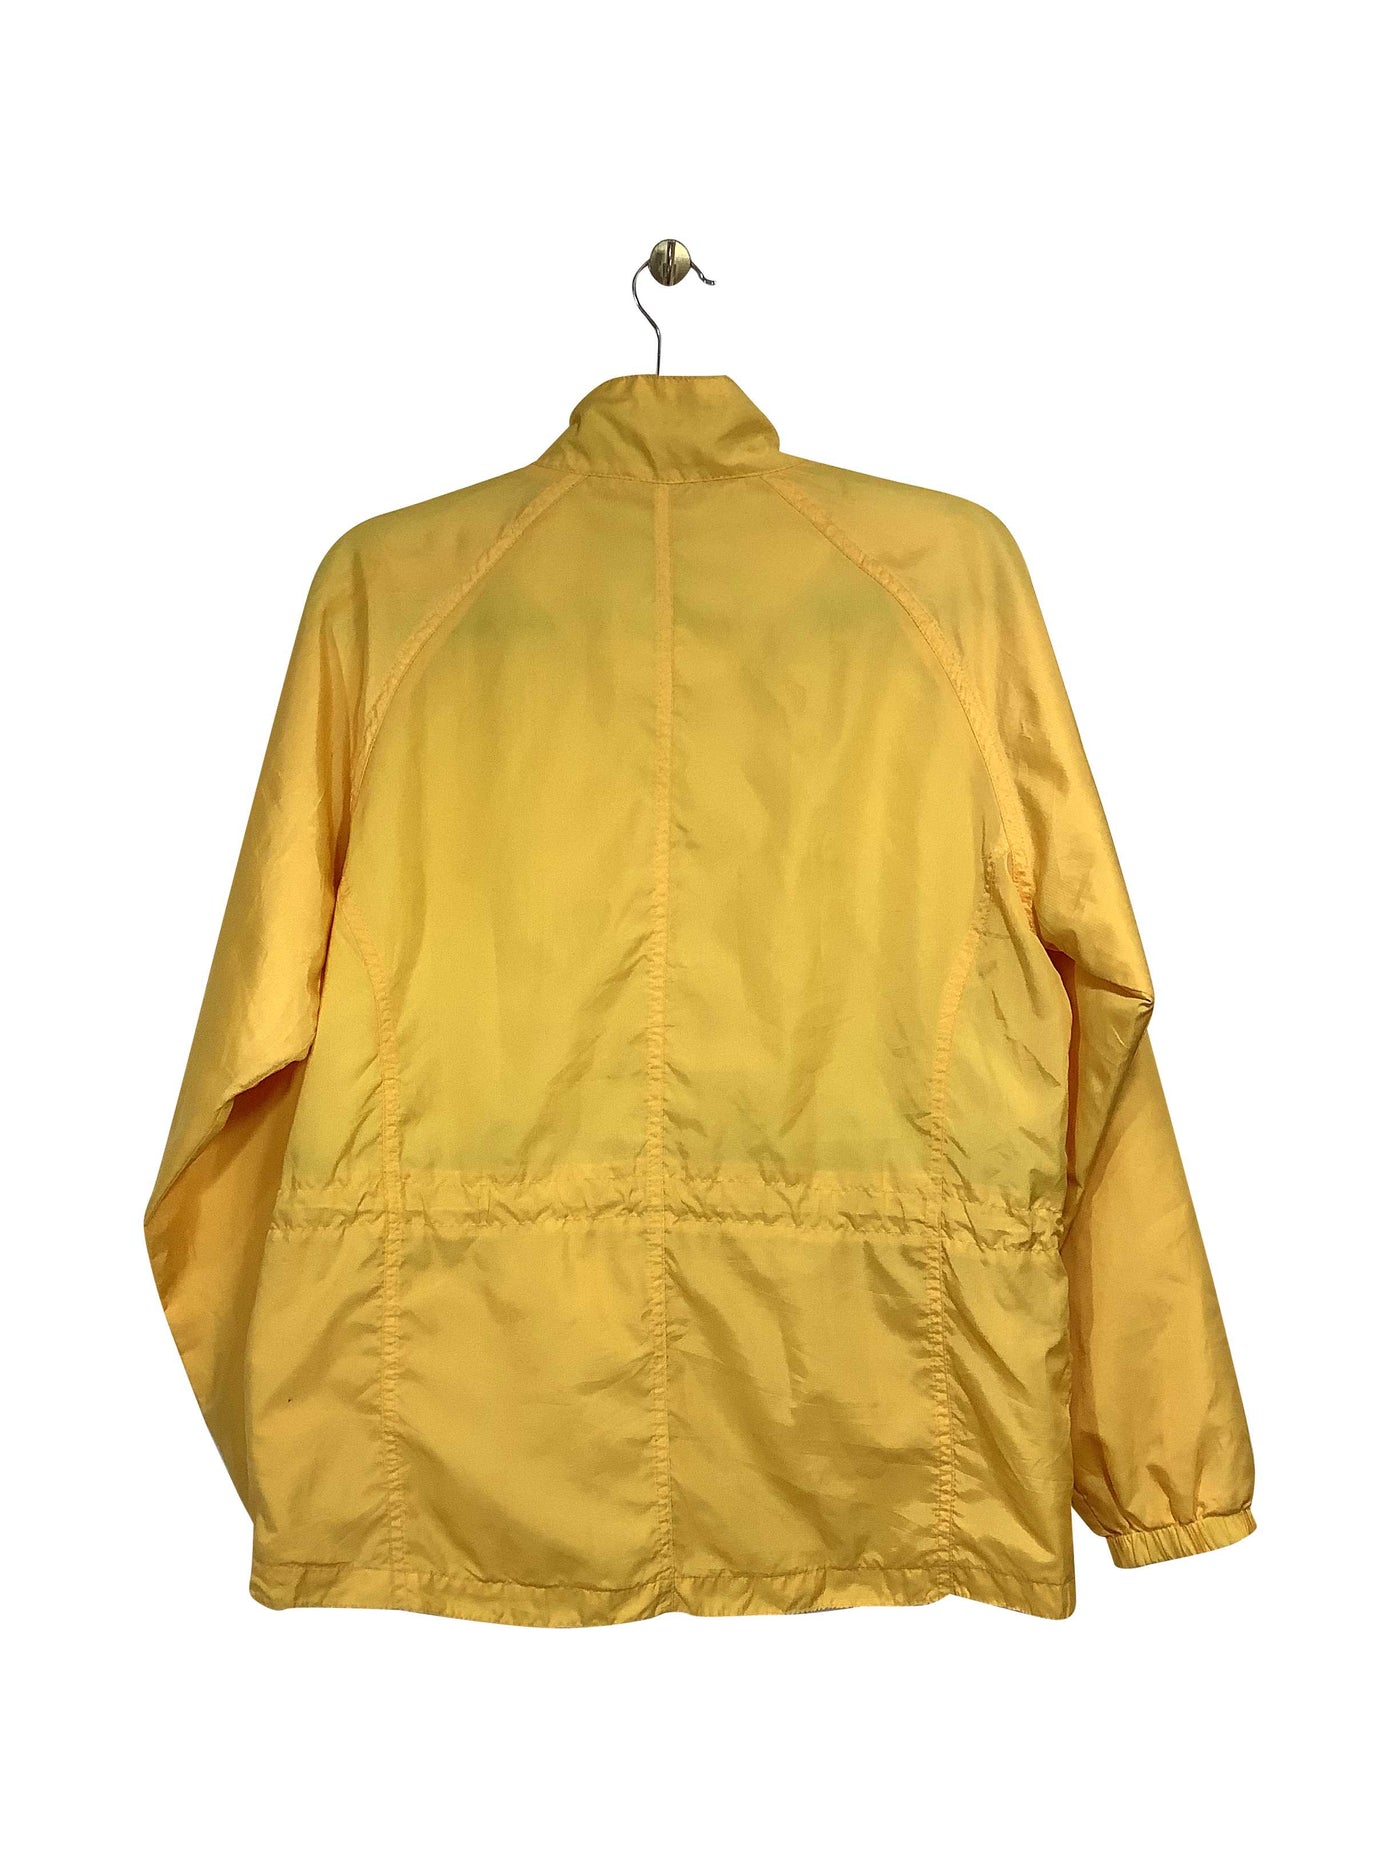 EDDIE BAUER Regular fit Coat in Yellow - Size M | 45 $ KOOP